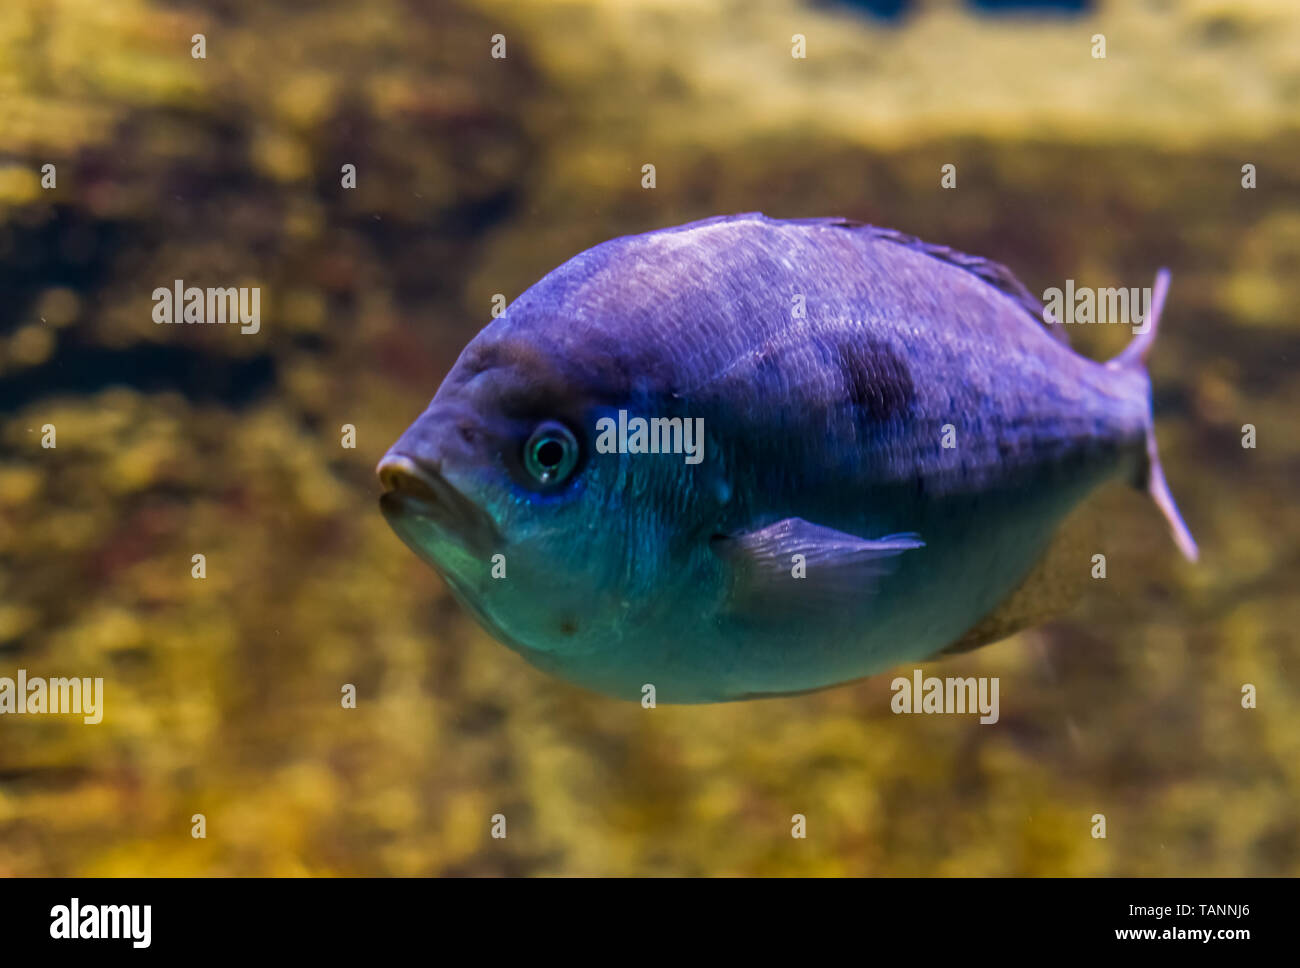 Sargo blanco besugo en primer plano, vivo color púrpura efecto sobre las escalas, peces tropicales de los océanos atlántico e índico Foto de stock